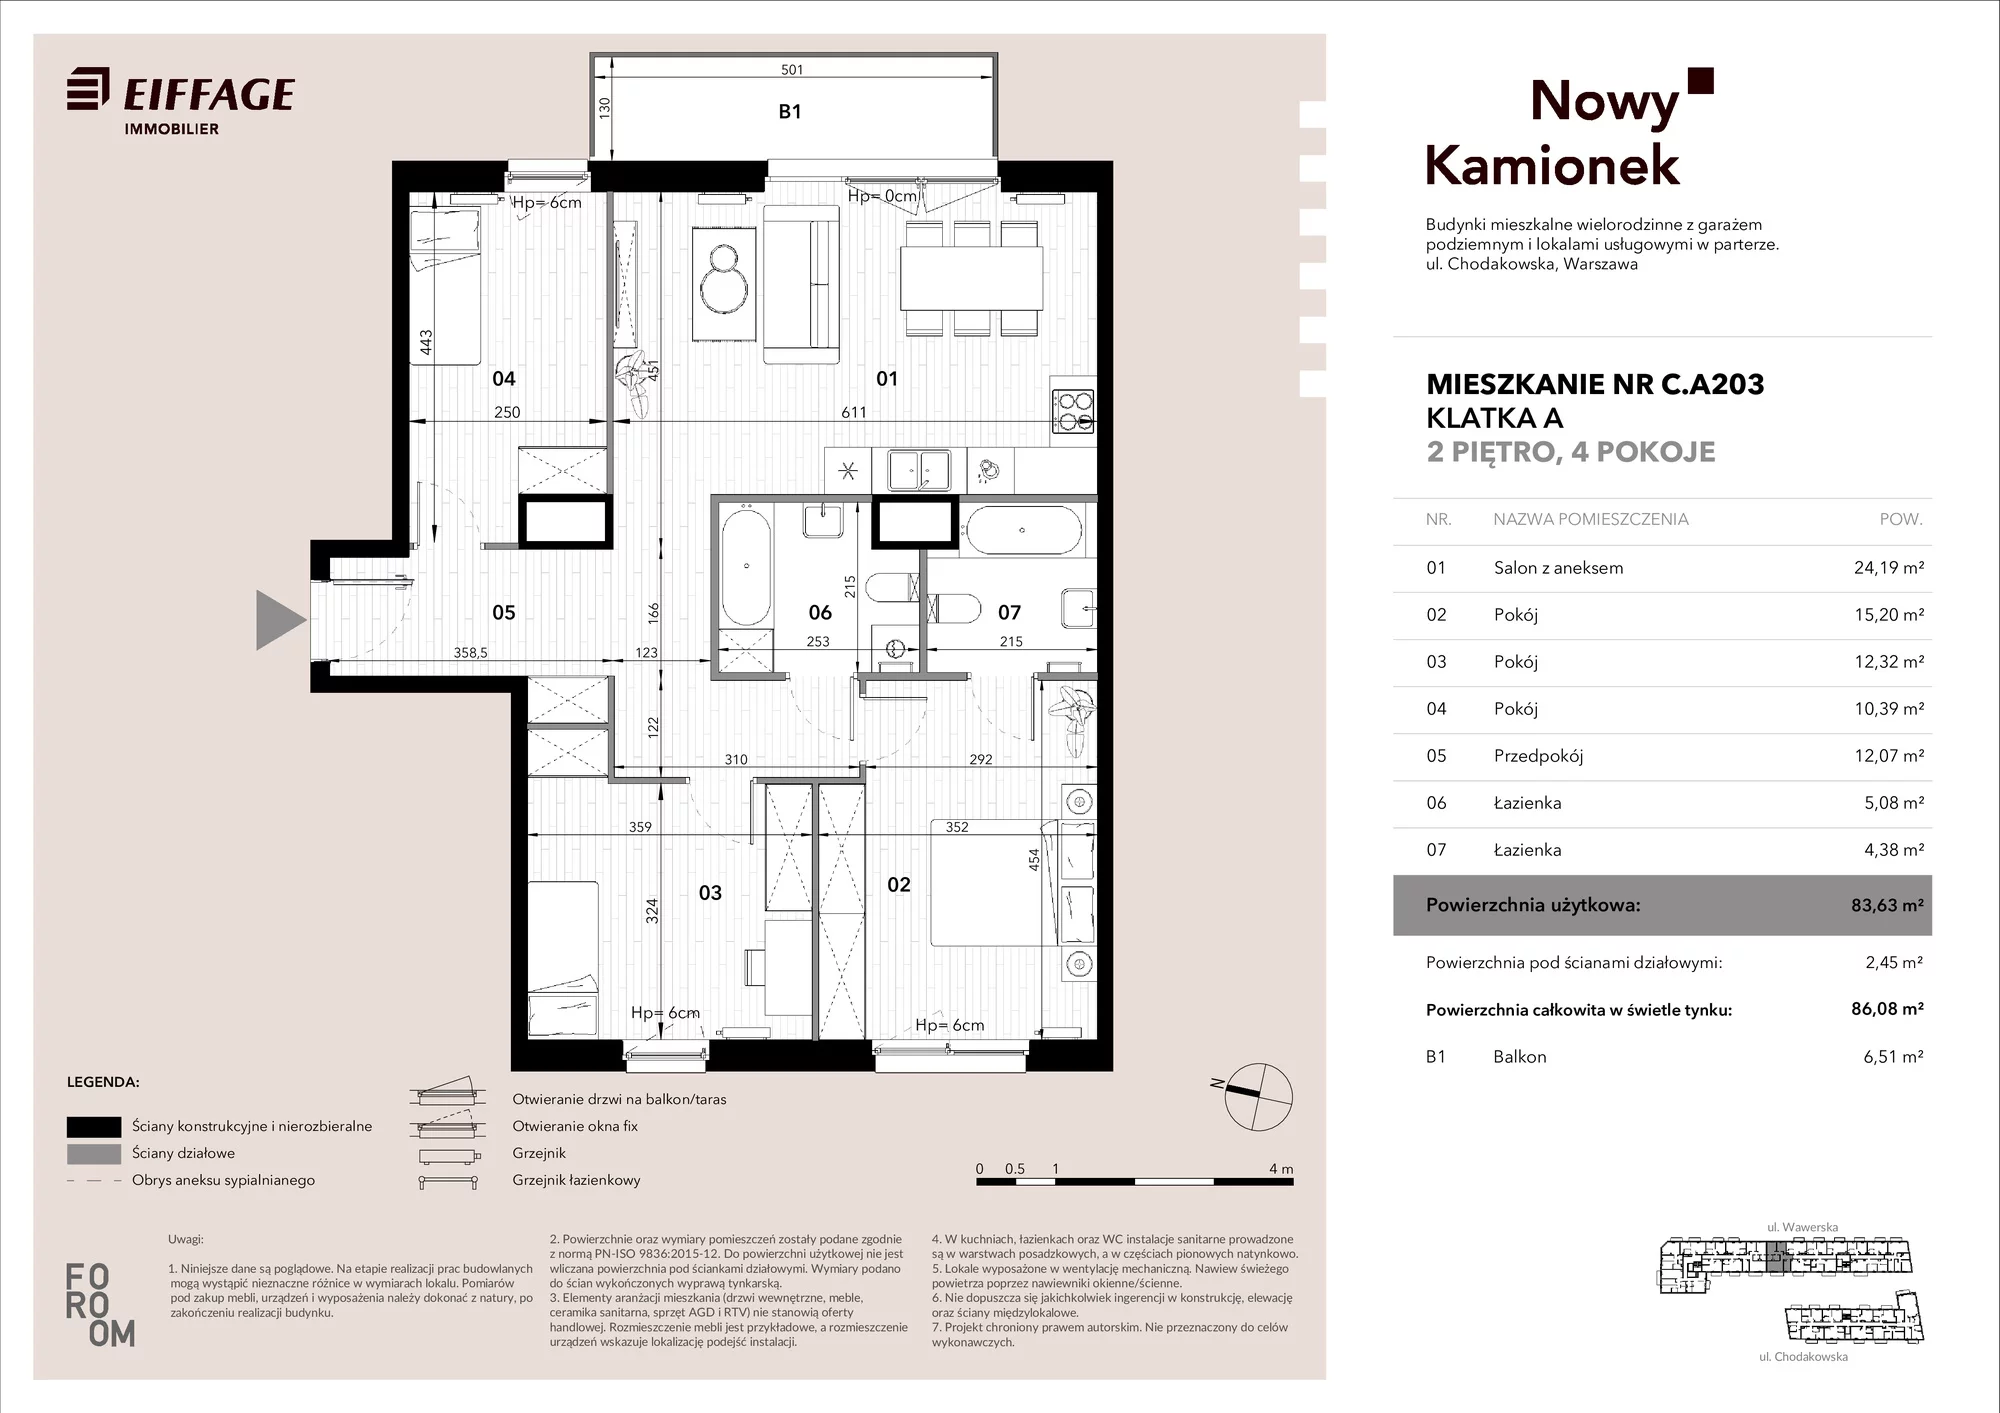 Mieszkanie 83,63 m², piętro 2, oferta nr C.A203, Nowy Kamionek, Warszawa, Praga Południe, Kamionek, ul. Chodakowska